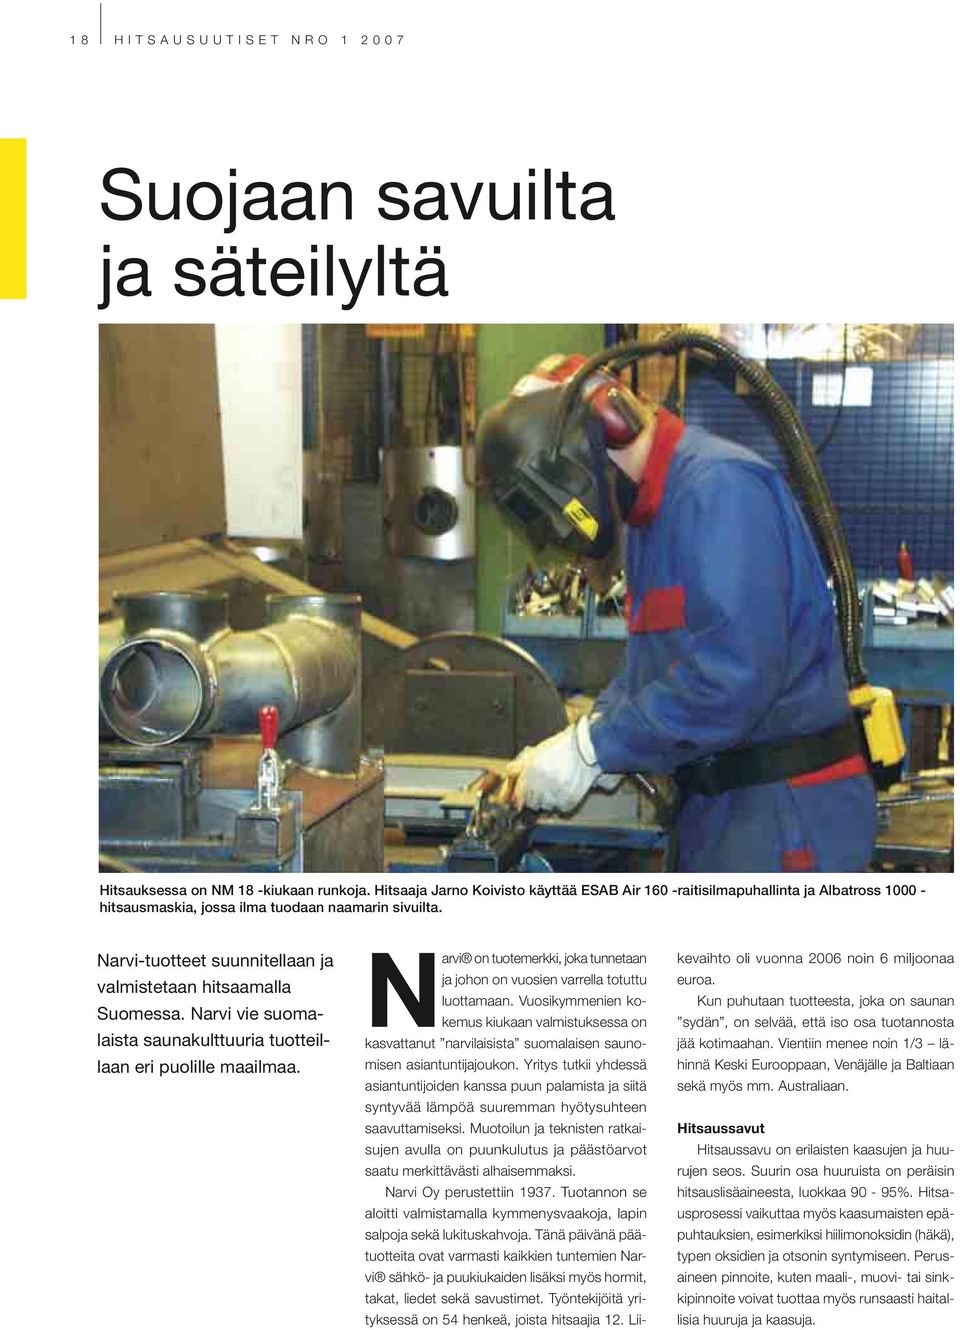 Narvi-tuotteet suunnitellaan ja valmistetaan hitsaamalla Suomessa. Narvi vie suomalaista saunakulttuuria tuotteillaan eri puolille maailmaa.